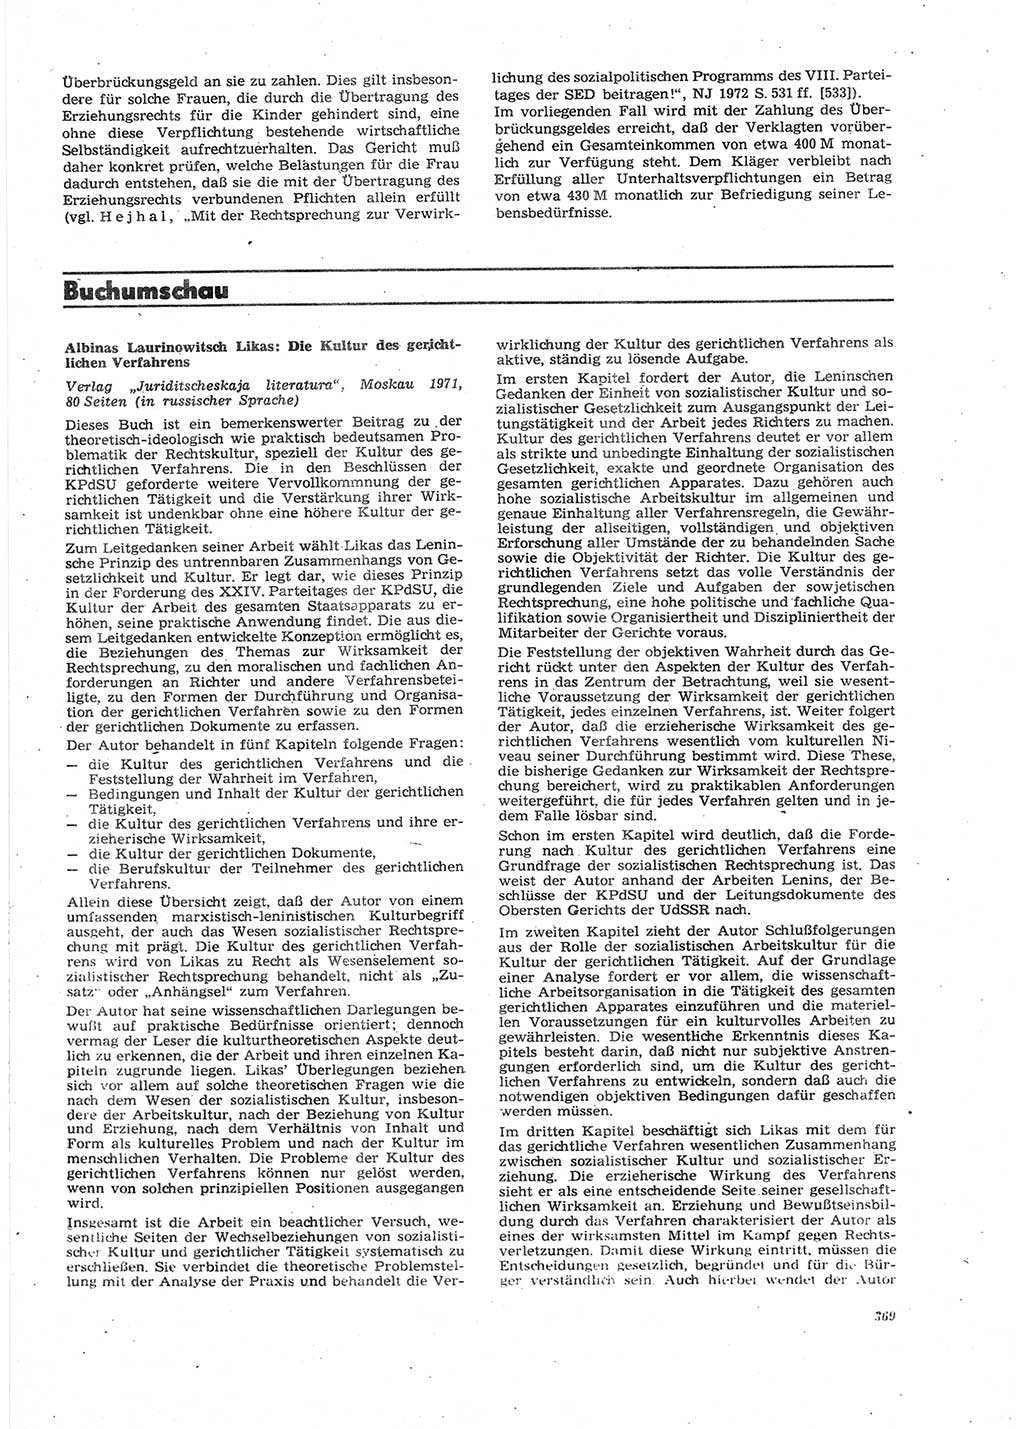 Neue Justiz (NJ), Zeitschrift für Recht und Rechtswissenschaft [Deutsche Demokratische Republik (DDR)], 27. Jahrgang 1973, Seite 369 (NJ DDR 1973, S. 369)